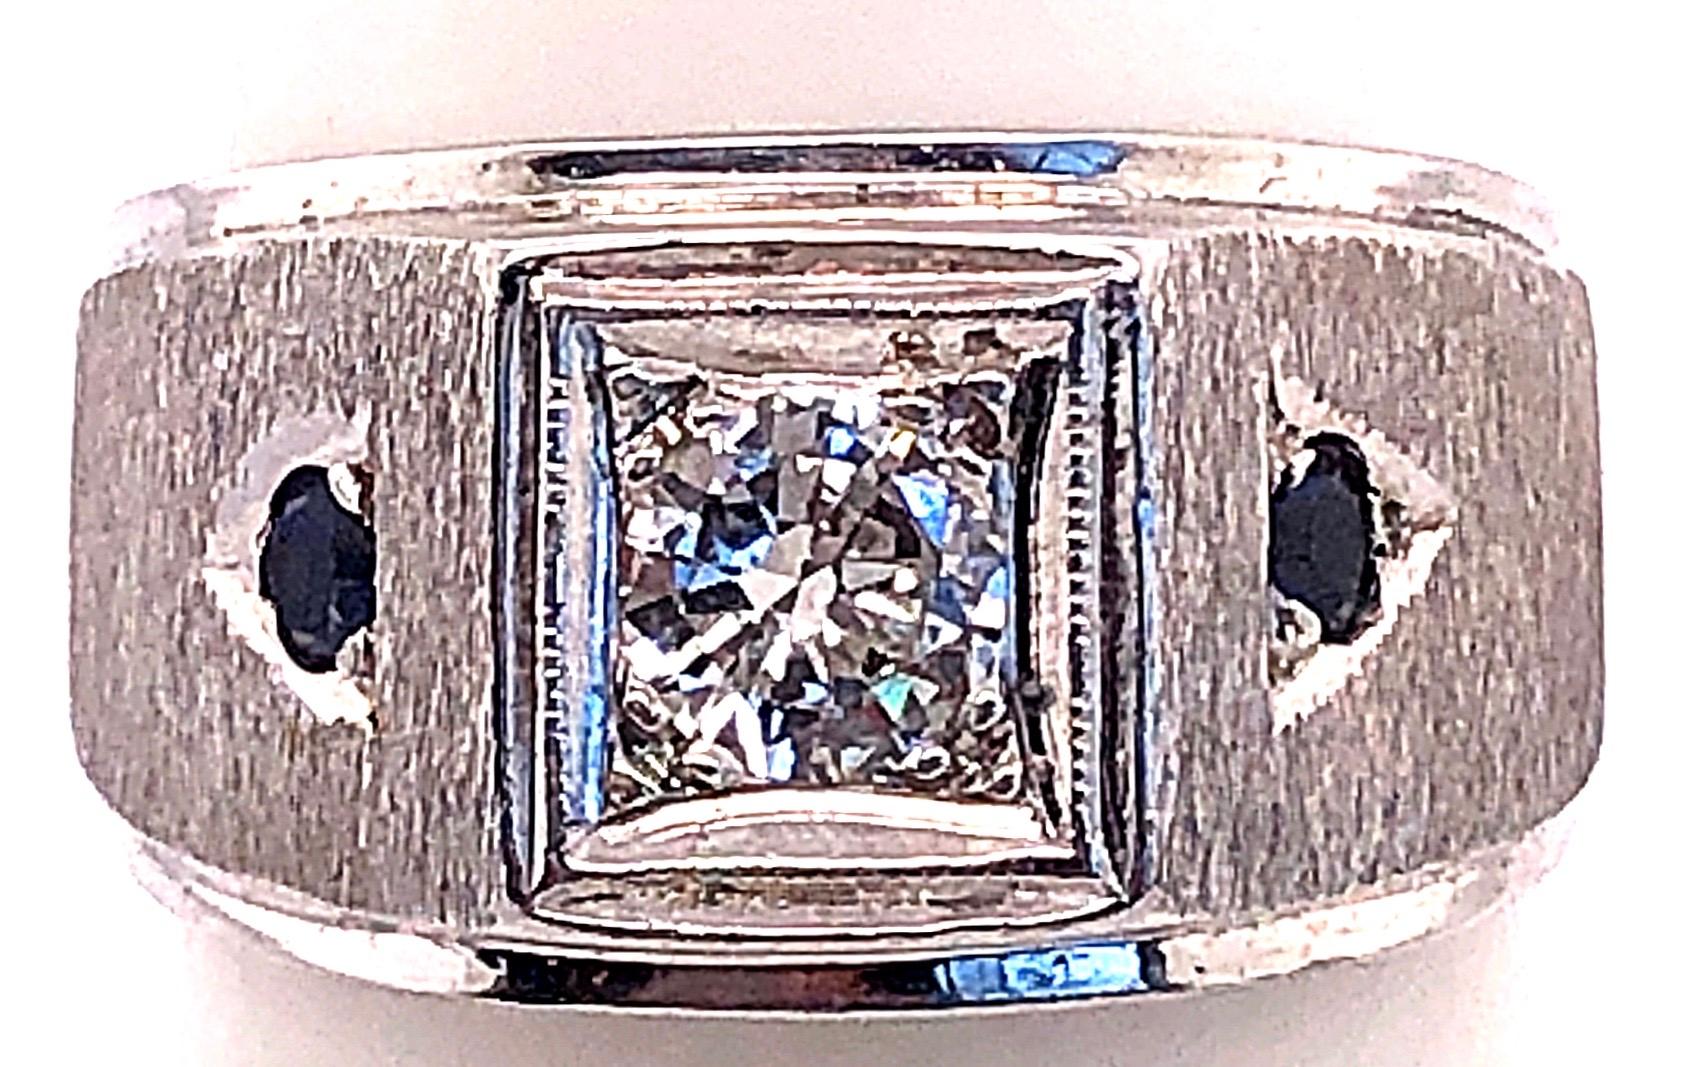 14 Karat Weißgold Diamant Solitär Band mit Saphir Akzente Größe 7.
0.80 Gesamtgewicht der Diamanten.
2 Stück runde Saphire.
8.47 Gramm Gesamtgewicht.
11.07 Ringhöhe.